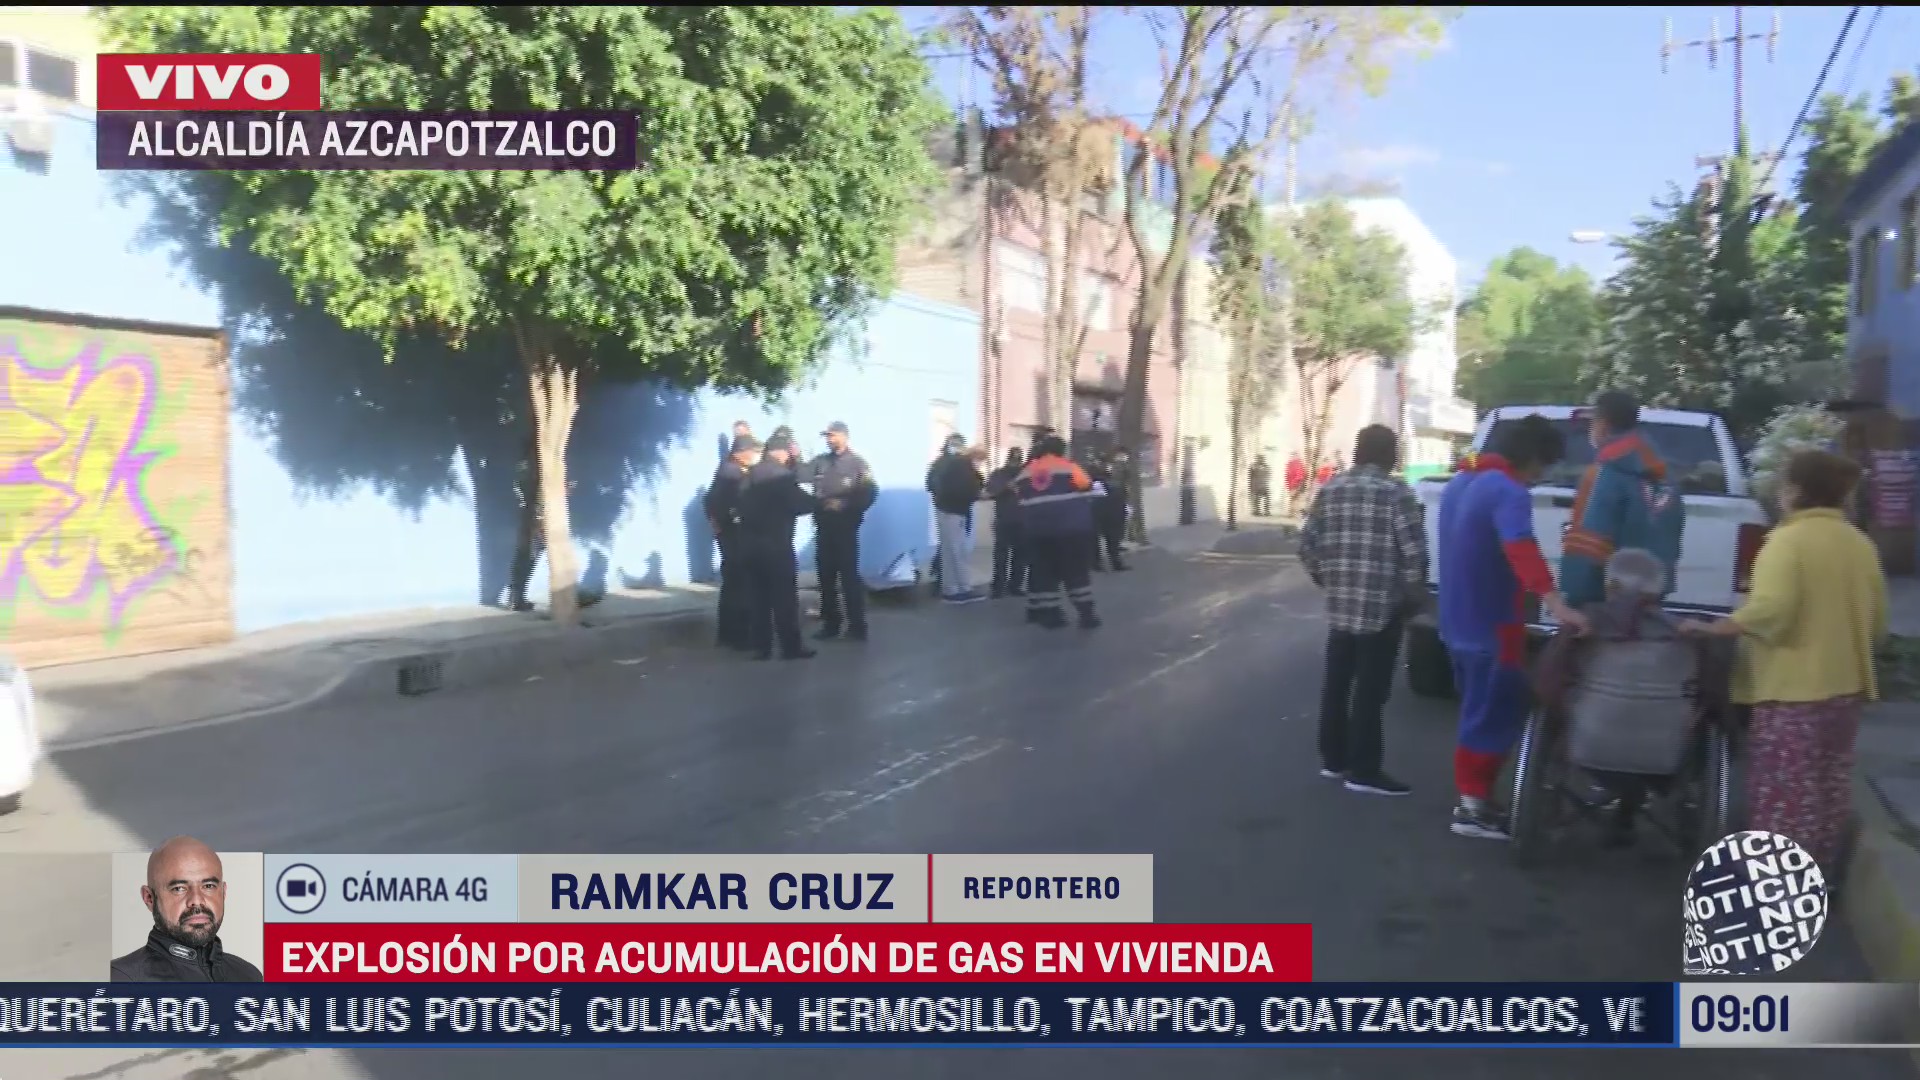 explosion por acumulacion de gas en vivienda en alcaldia azcapotzalco